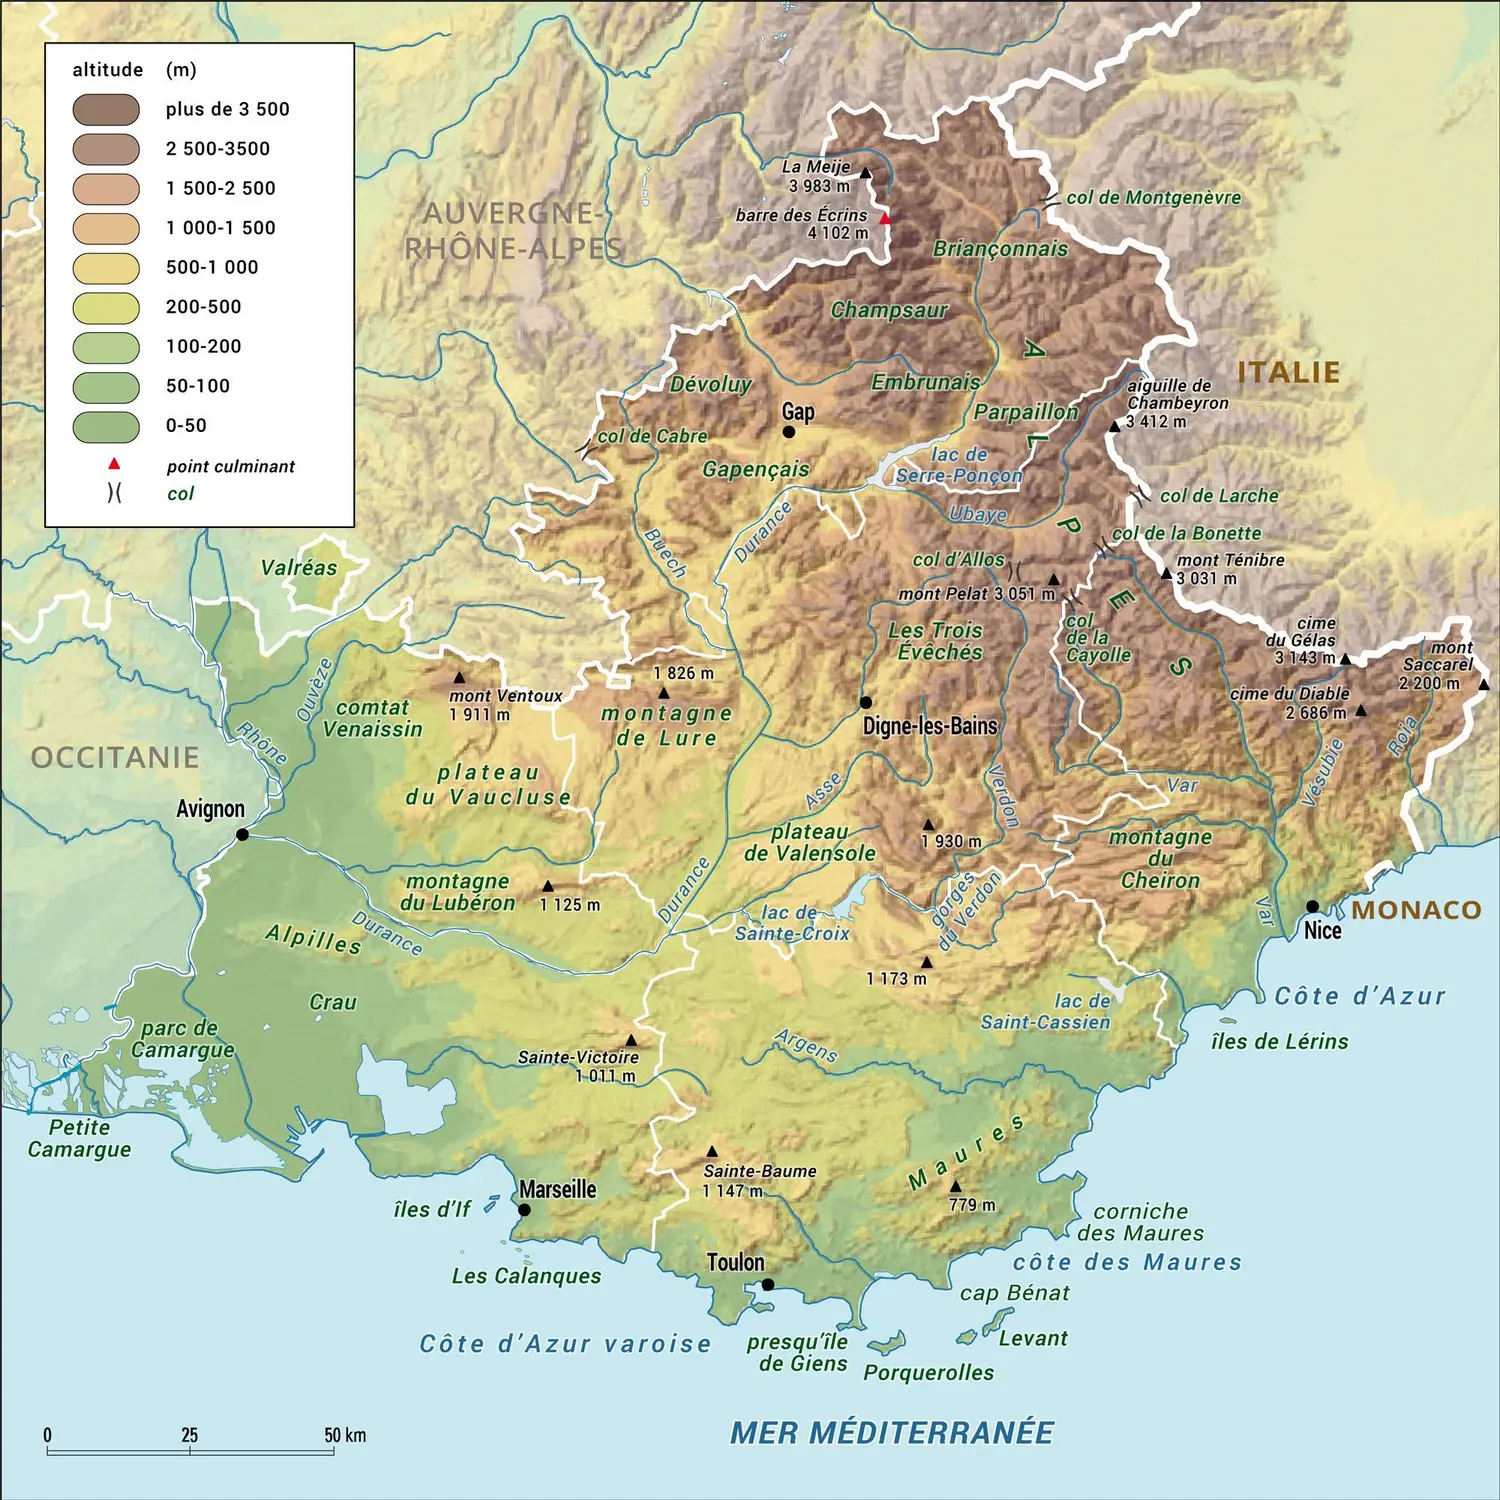 Provence-Alpes-Côte d'Azur : carte physique